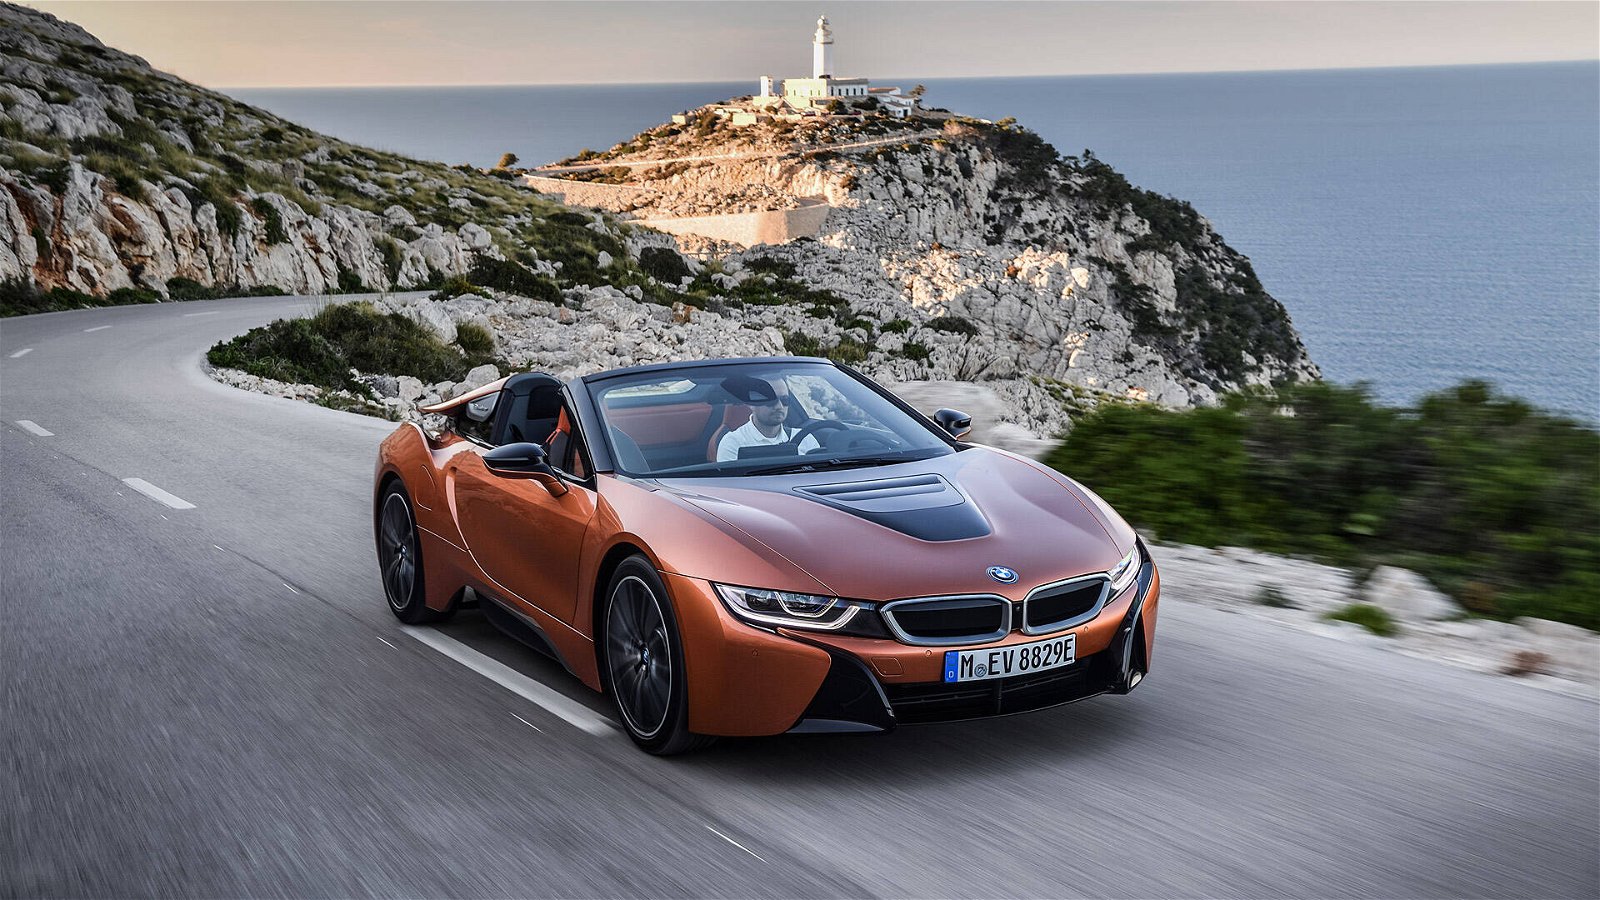 Immagine di BMW, negli USA arriva l'abbonamento anti-autovelox e radar